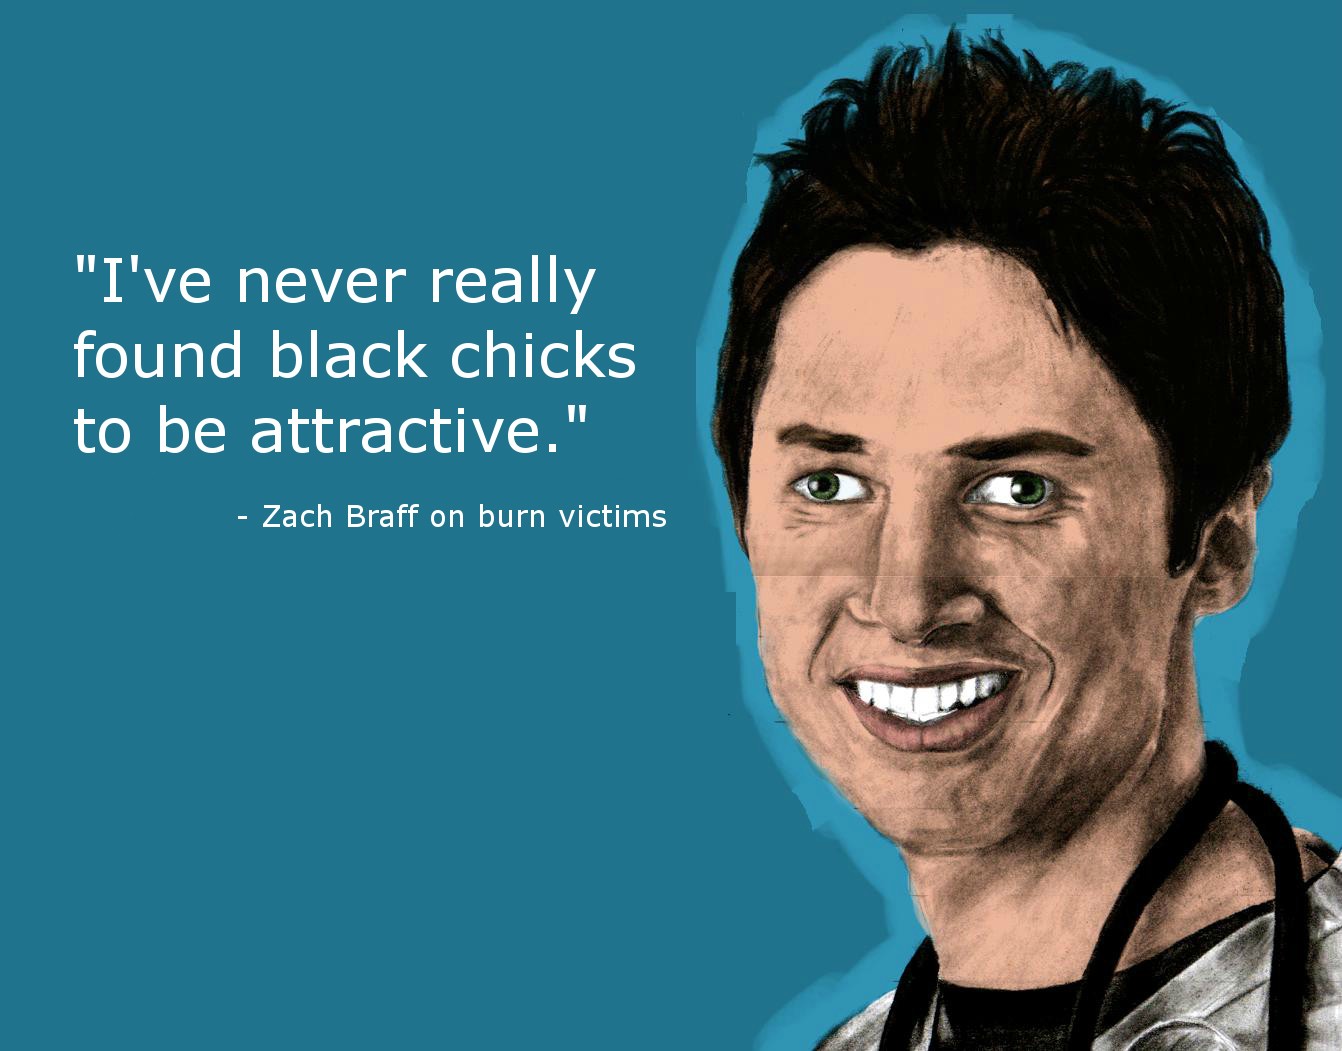 Zach Braff's quote #1